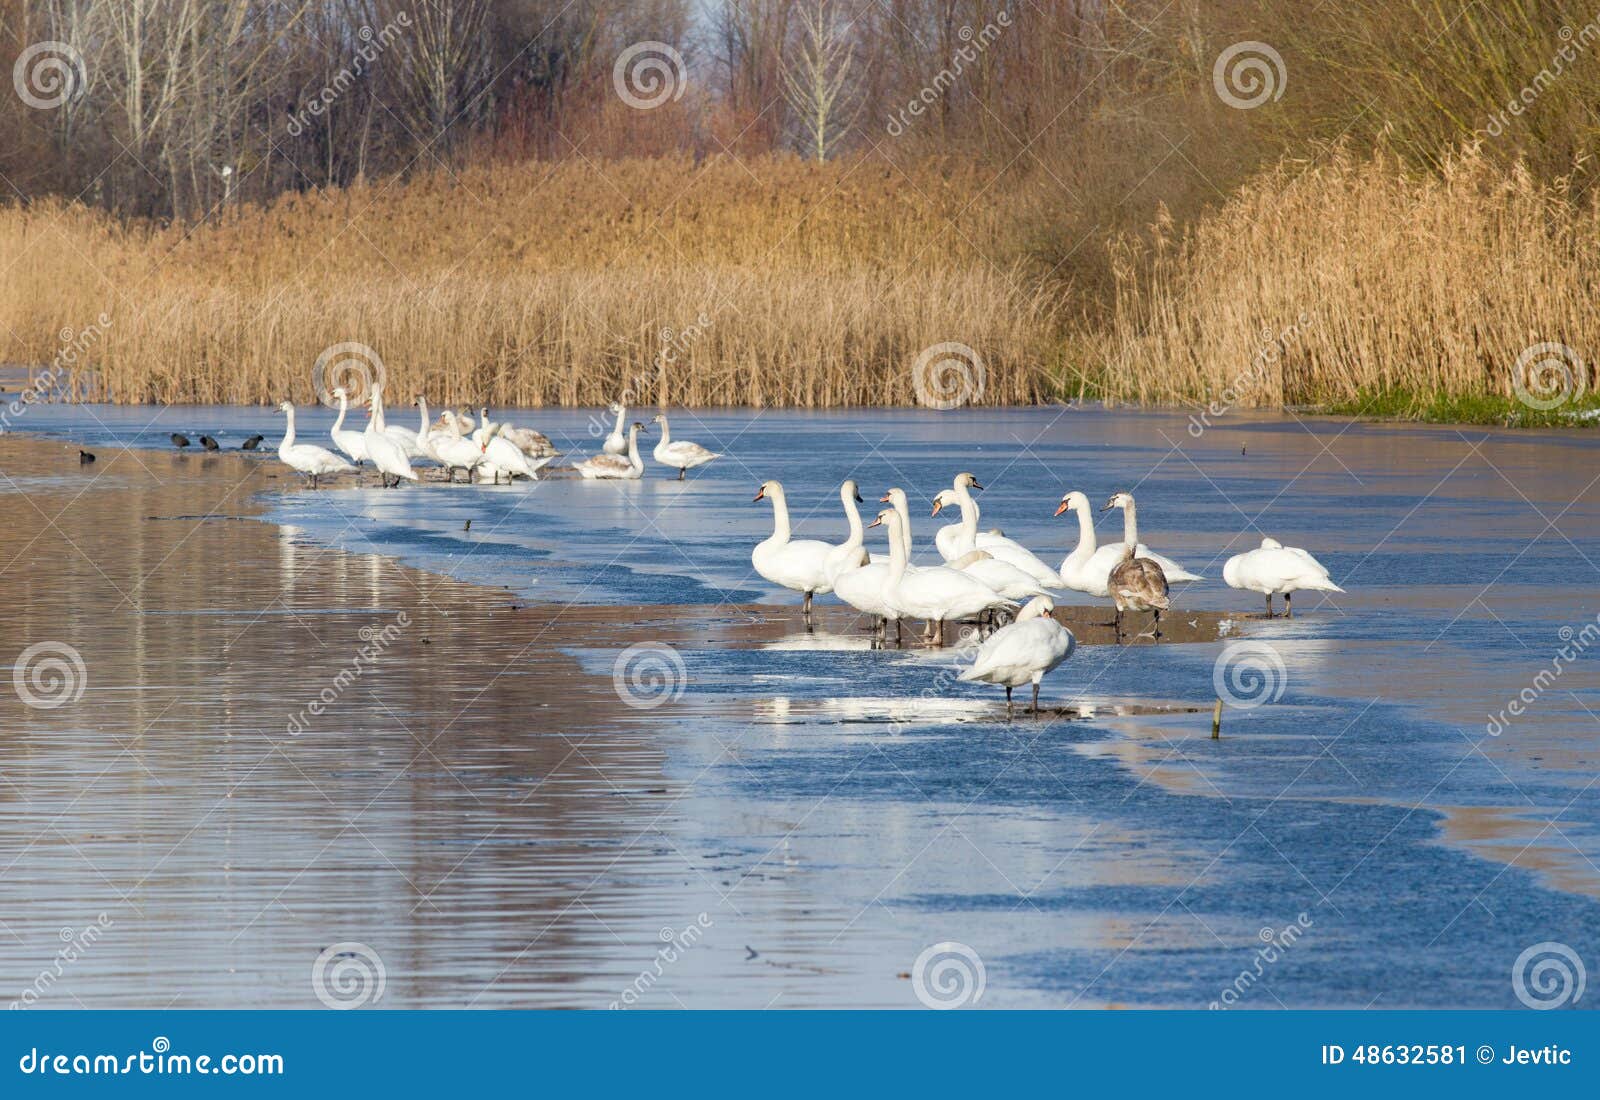 Cisnes na costa do rio. Grande grupo de cisnes que estão na costa do rio no tempo de inverno